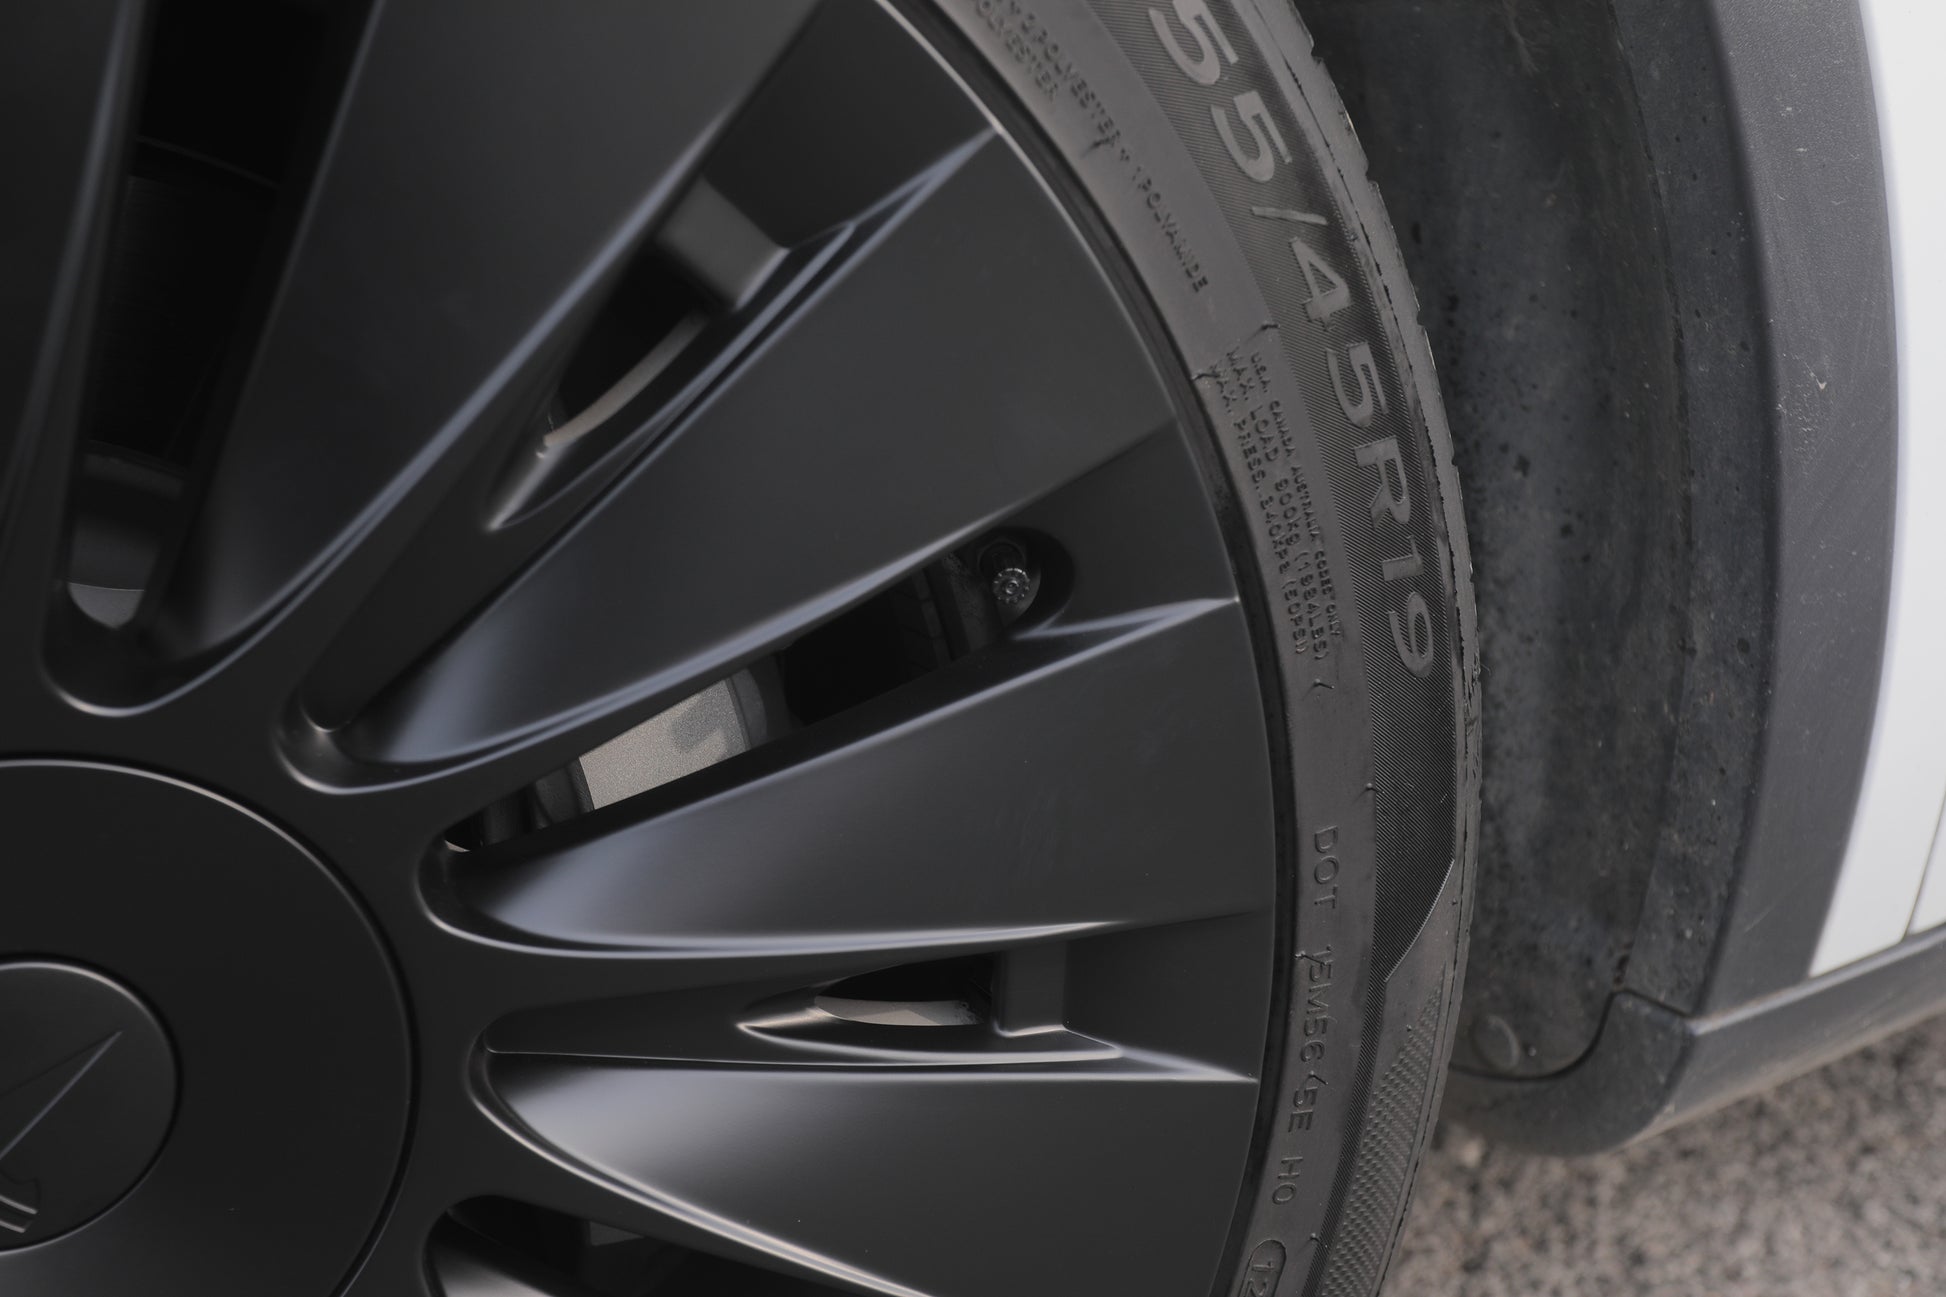 ARMOR MAT  Matte Black Gemini 19-inch hubcap kit, Fits Tesla Model Y –  TeraStop